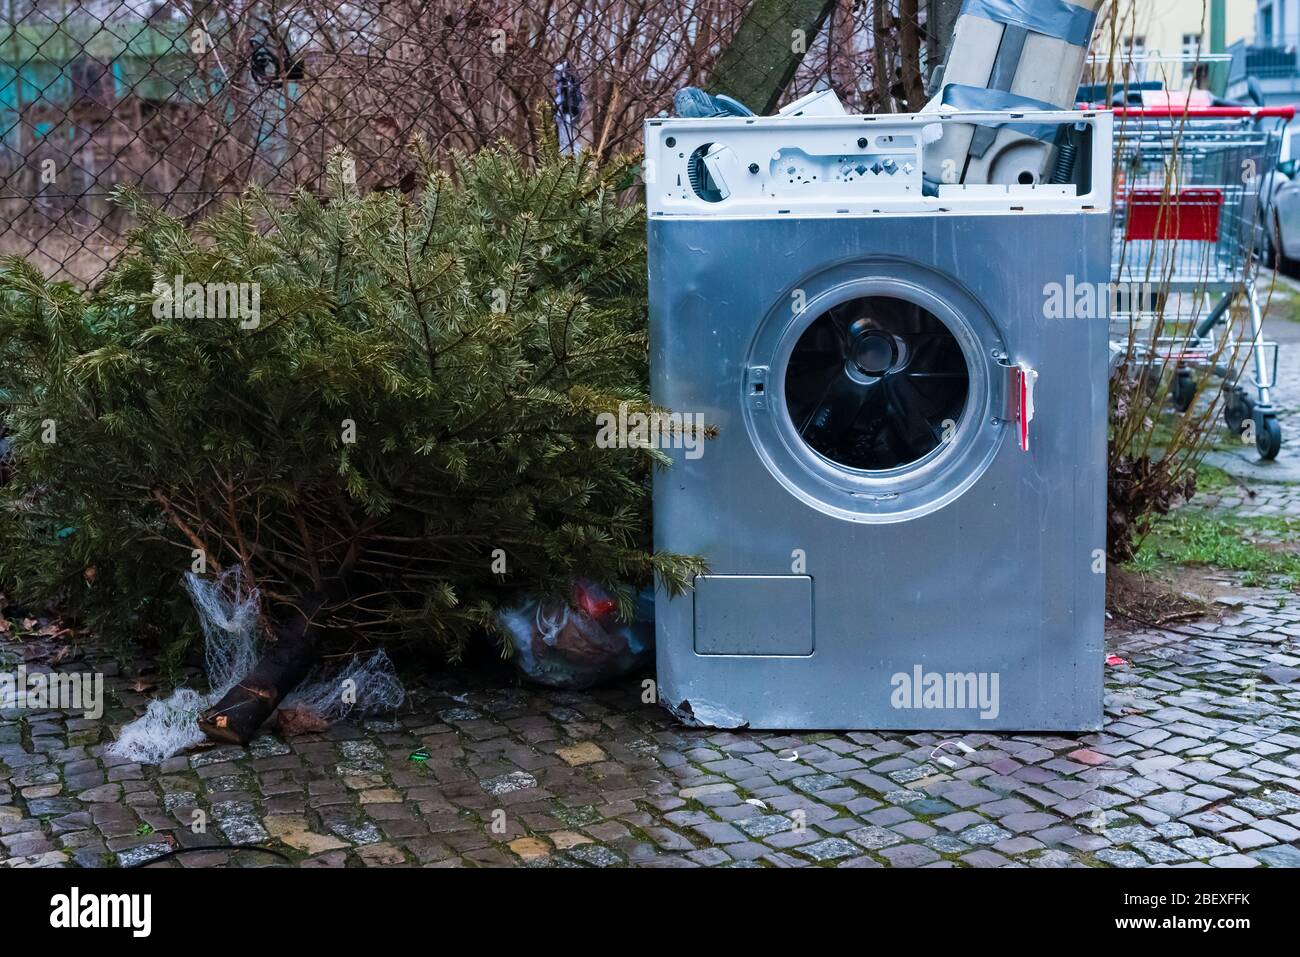 Alte Waschmaschine steht auf dem Bürgersteig, Müll auf der Straße,  Hausmüll, Sperrmüll auf der Straße Stockfotografie - Alamy